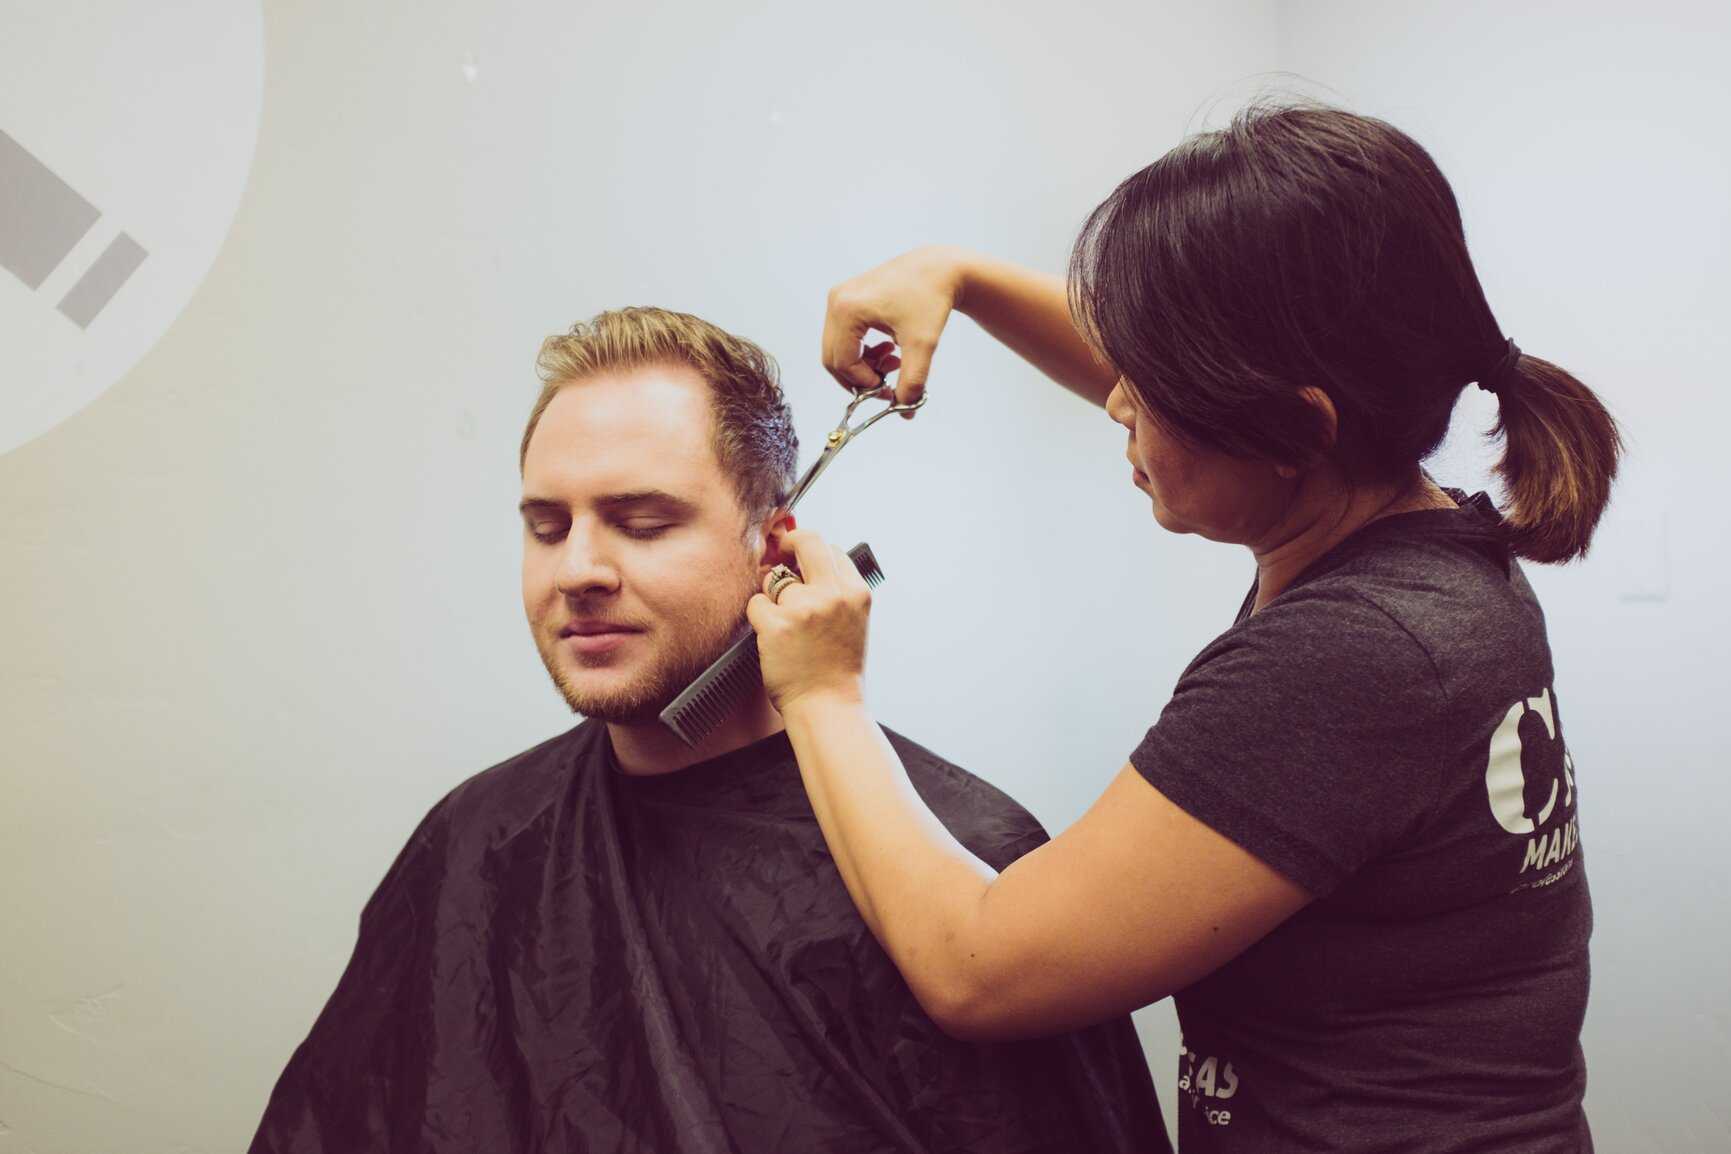 «моя работа – делать людей красивыми». парикмахер-колорист – о  профессии, клиентах и доверии* — новости барановичей, бреста, беларуси, мира. intex-press